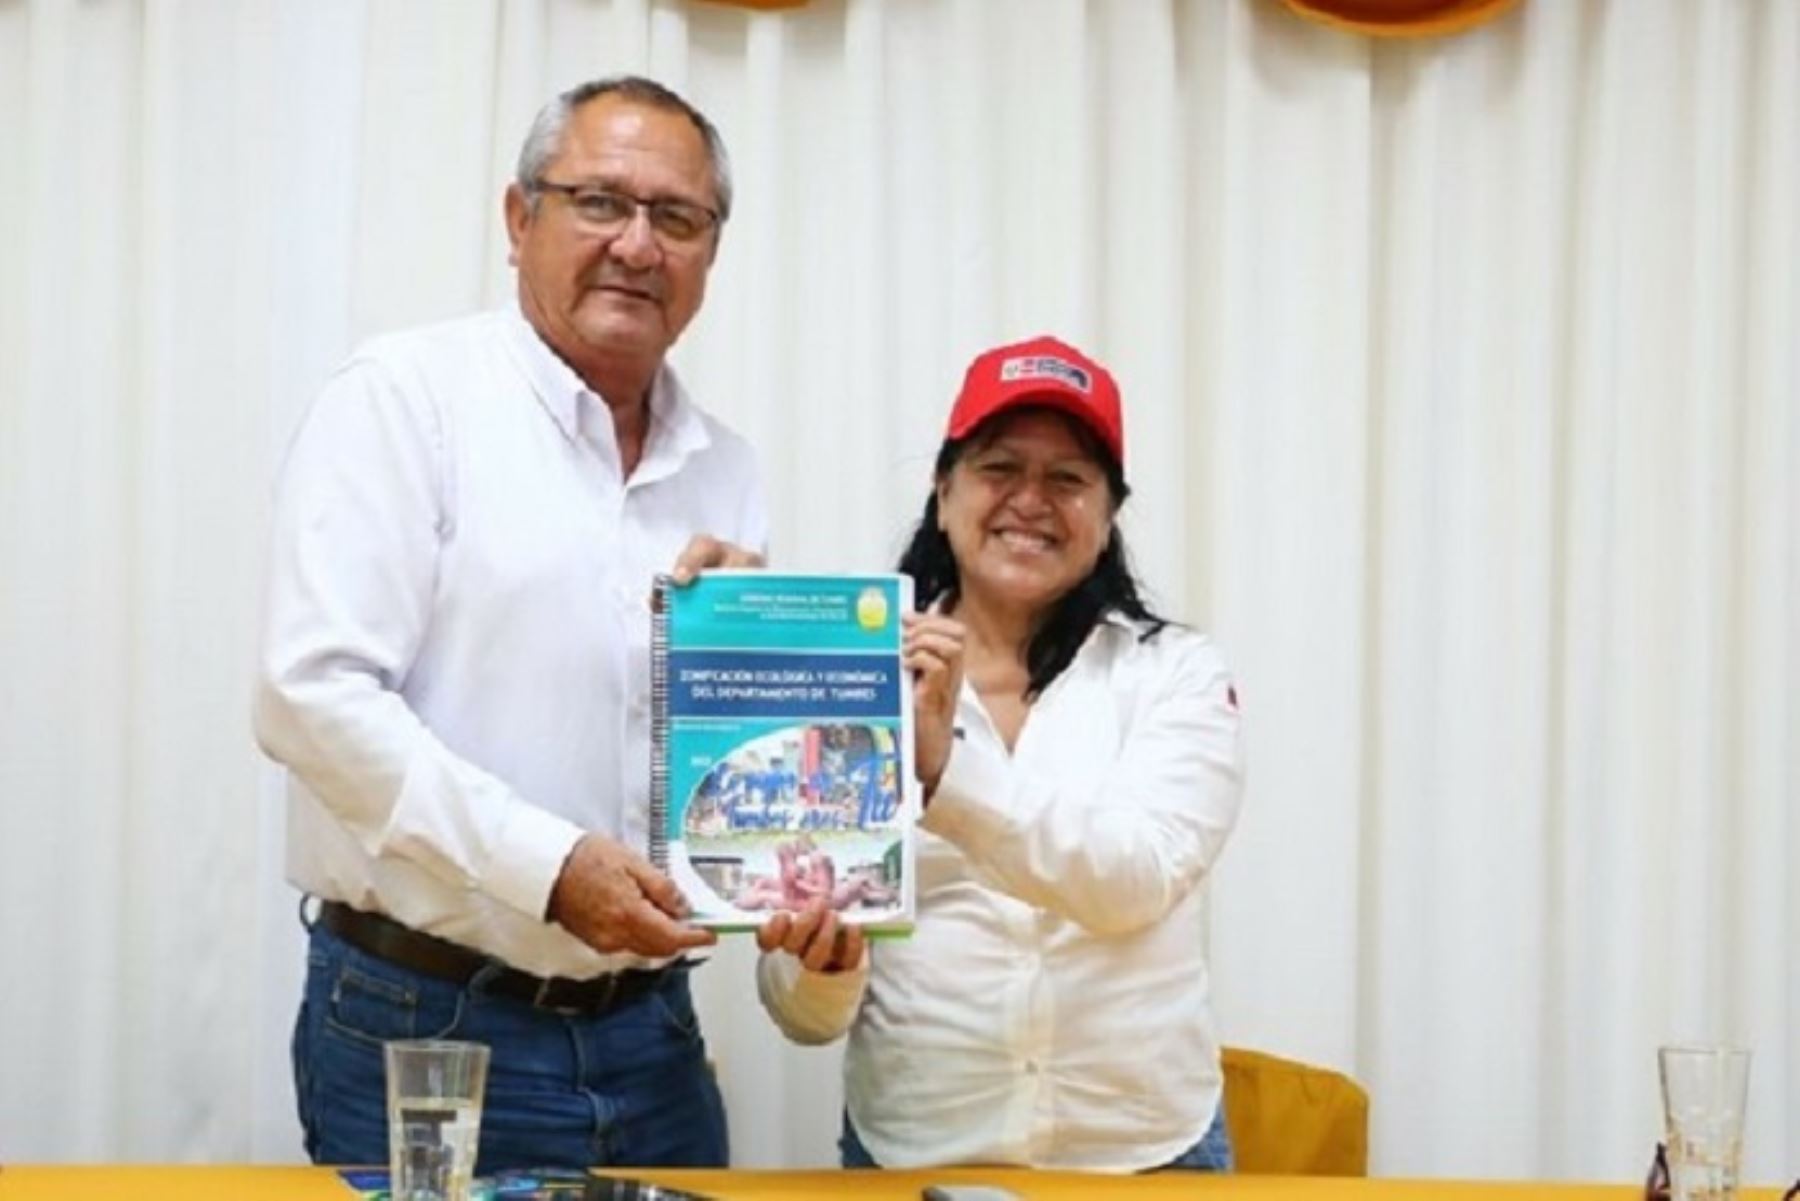 El estudio de la zonificación se desarrolló en el contexto de la Alianza Multiactor liderada por la Presidencia del Consejo de Ministros (PCM), a través de la Secretaría de Gobierno y Transformación Digital, y como Secretaria Técnica el Capítulo Perú del Plan Binacional de Desarrollo de la Región Fronteriza Perú-Ecuador.